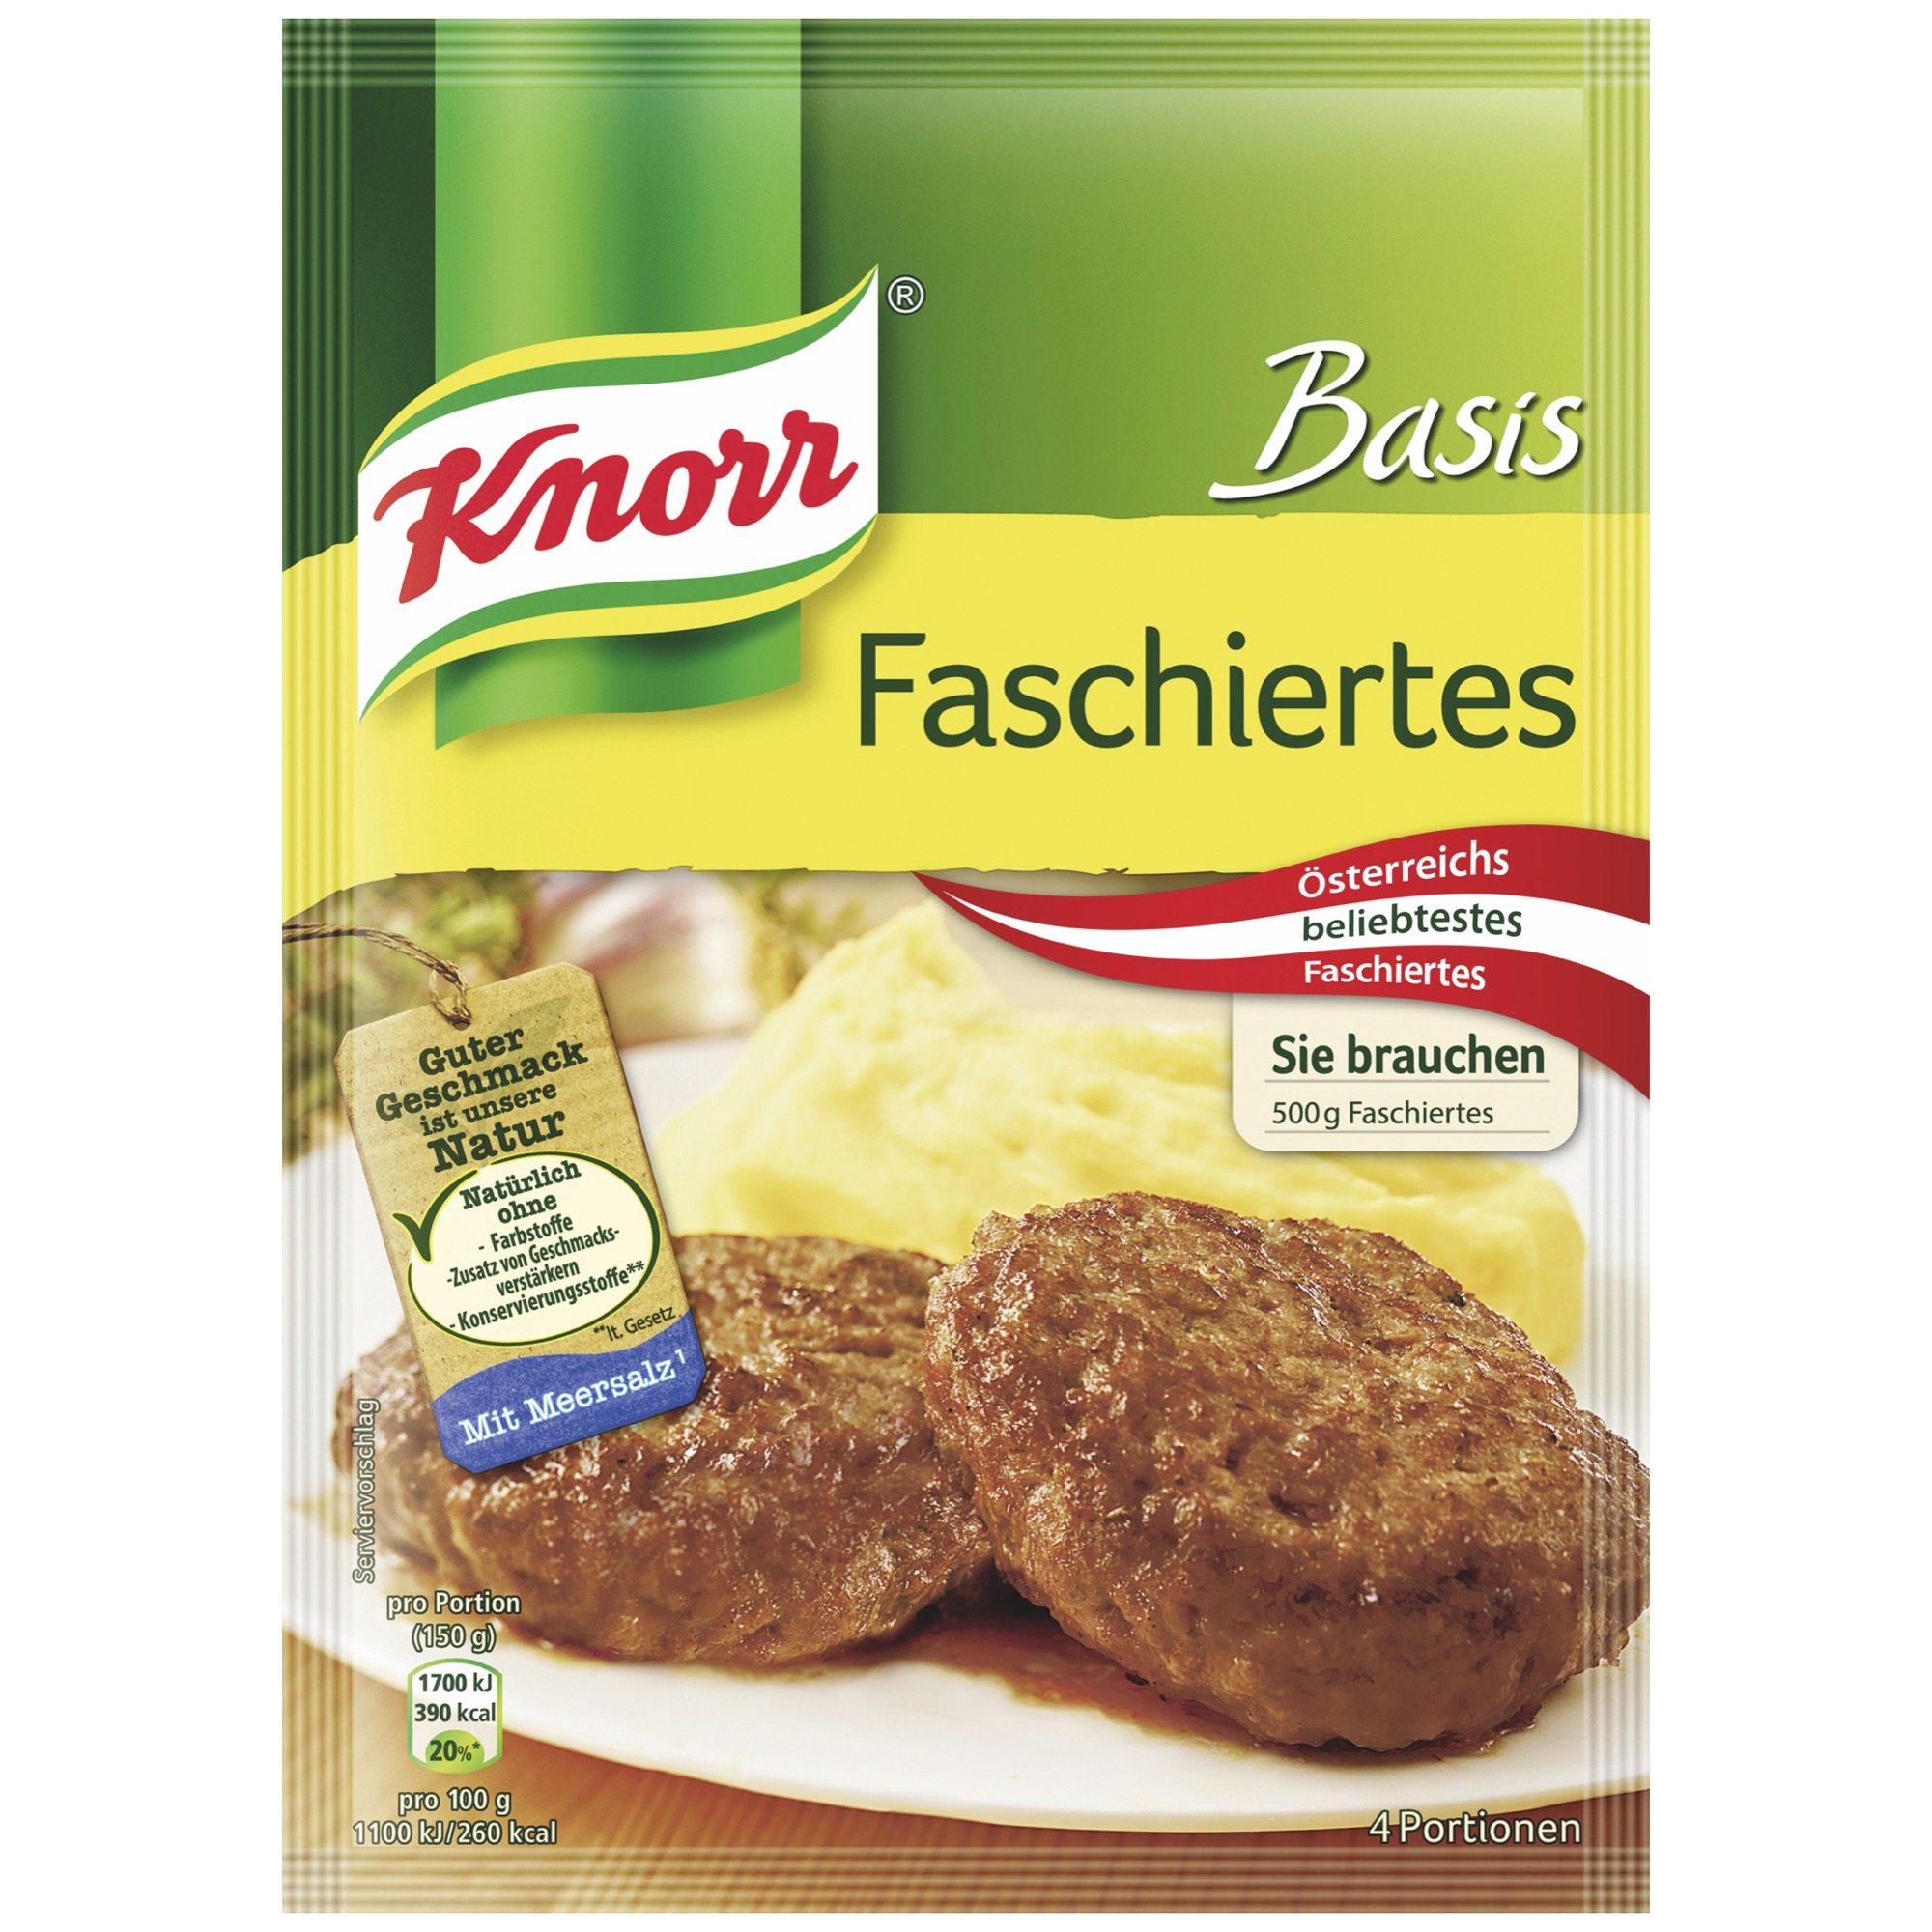 Knorr základ, fašírky